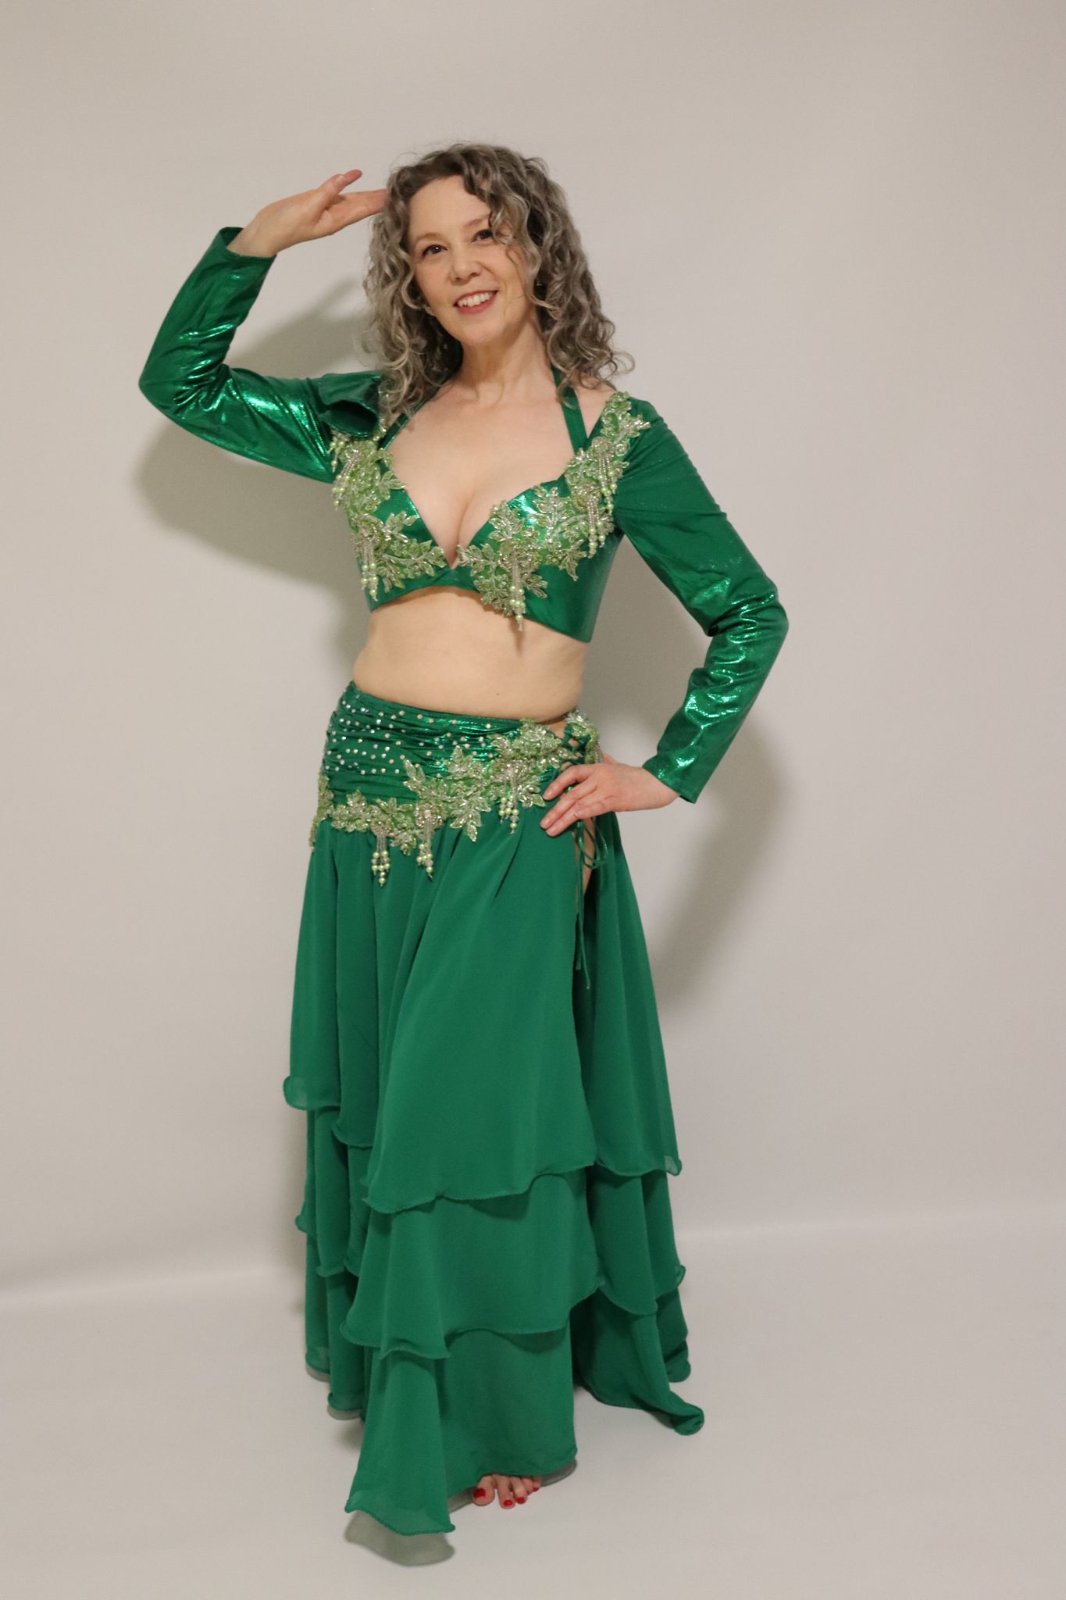 DXMRWJ Fluorescent Green Women Dance Wear Belly Dance Clothes